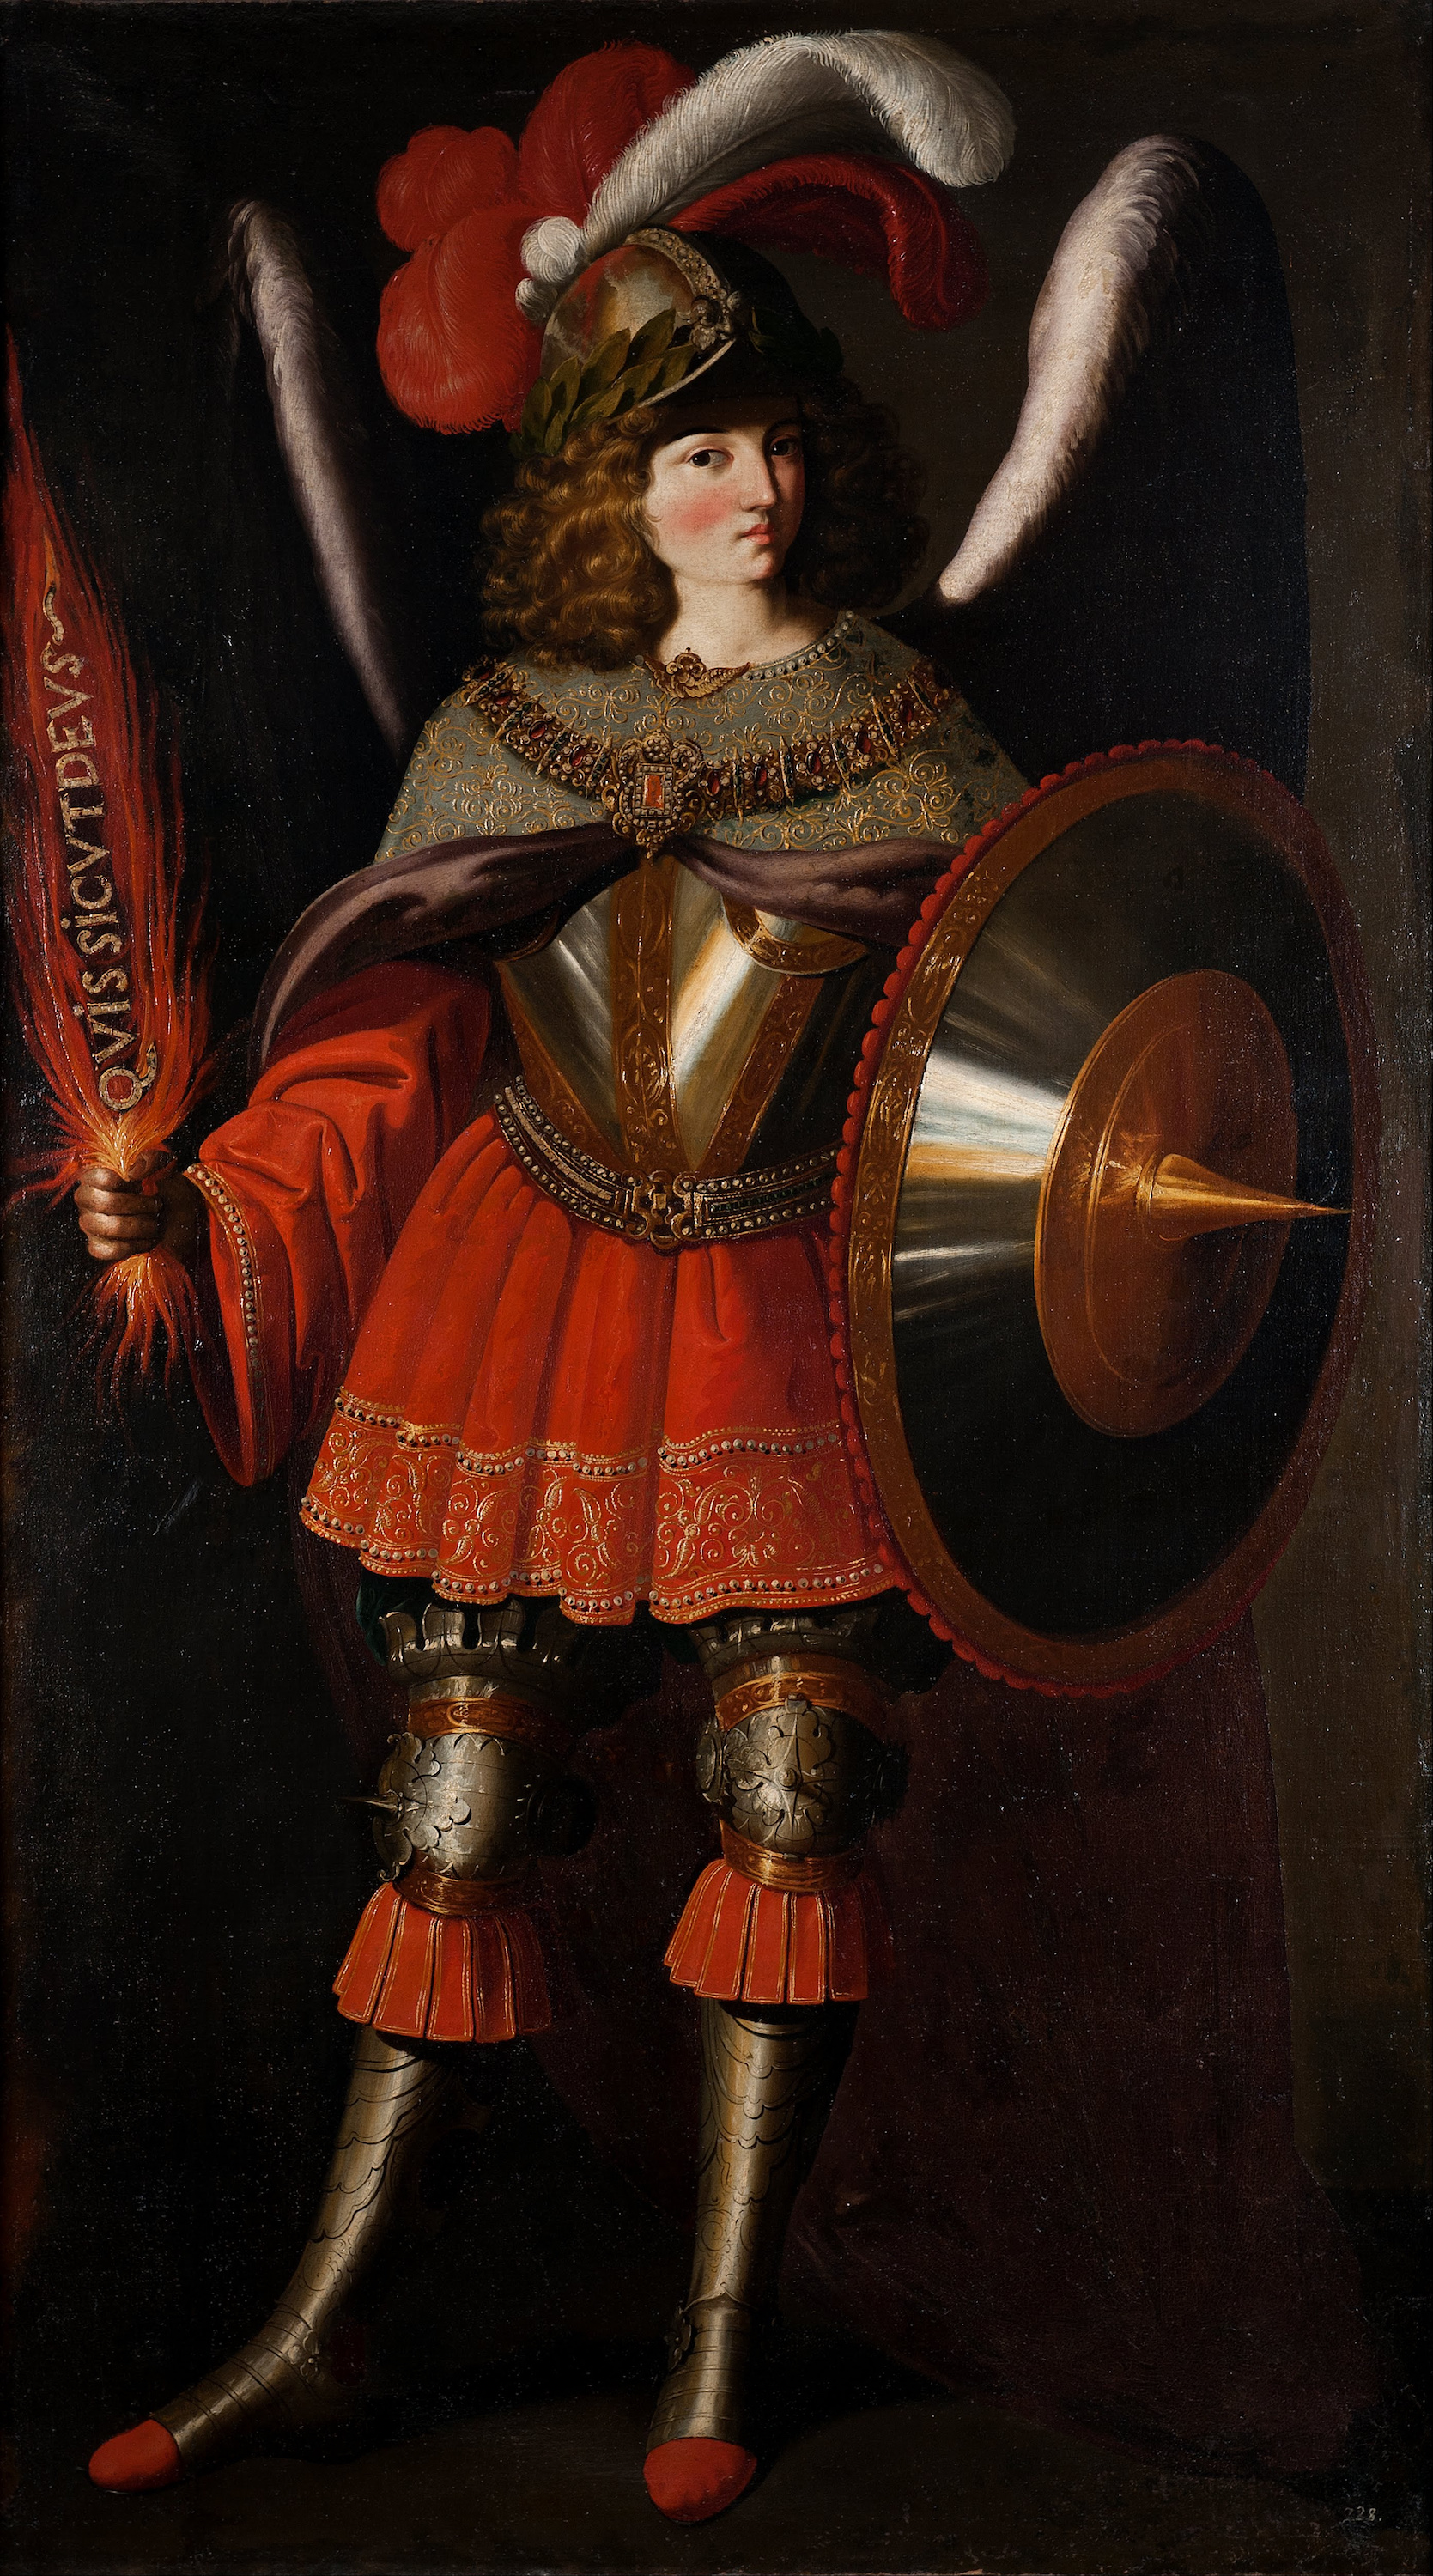 देवदूत माइकल(दी ऑर्केंजल माइकल) by Francisco de Zurbarán - १५९८-१६६४ - १२६ x २२४ से.मी. 